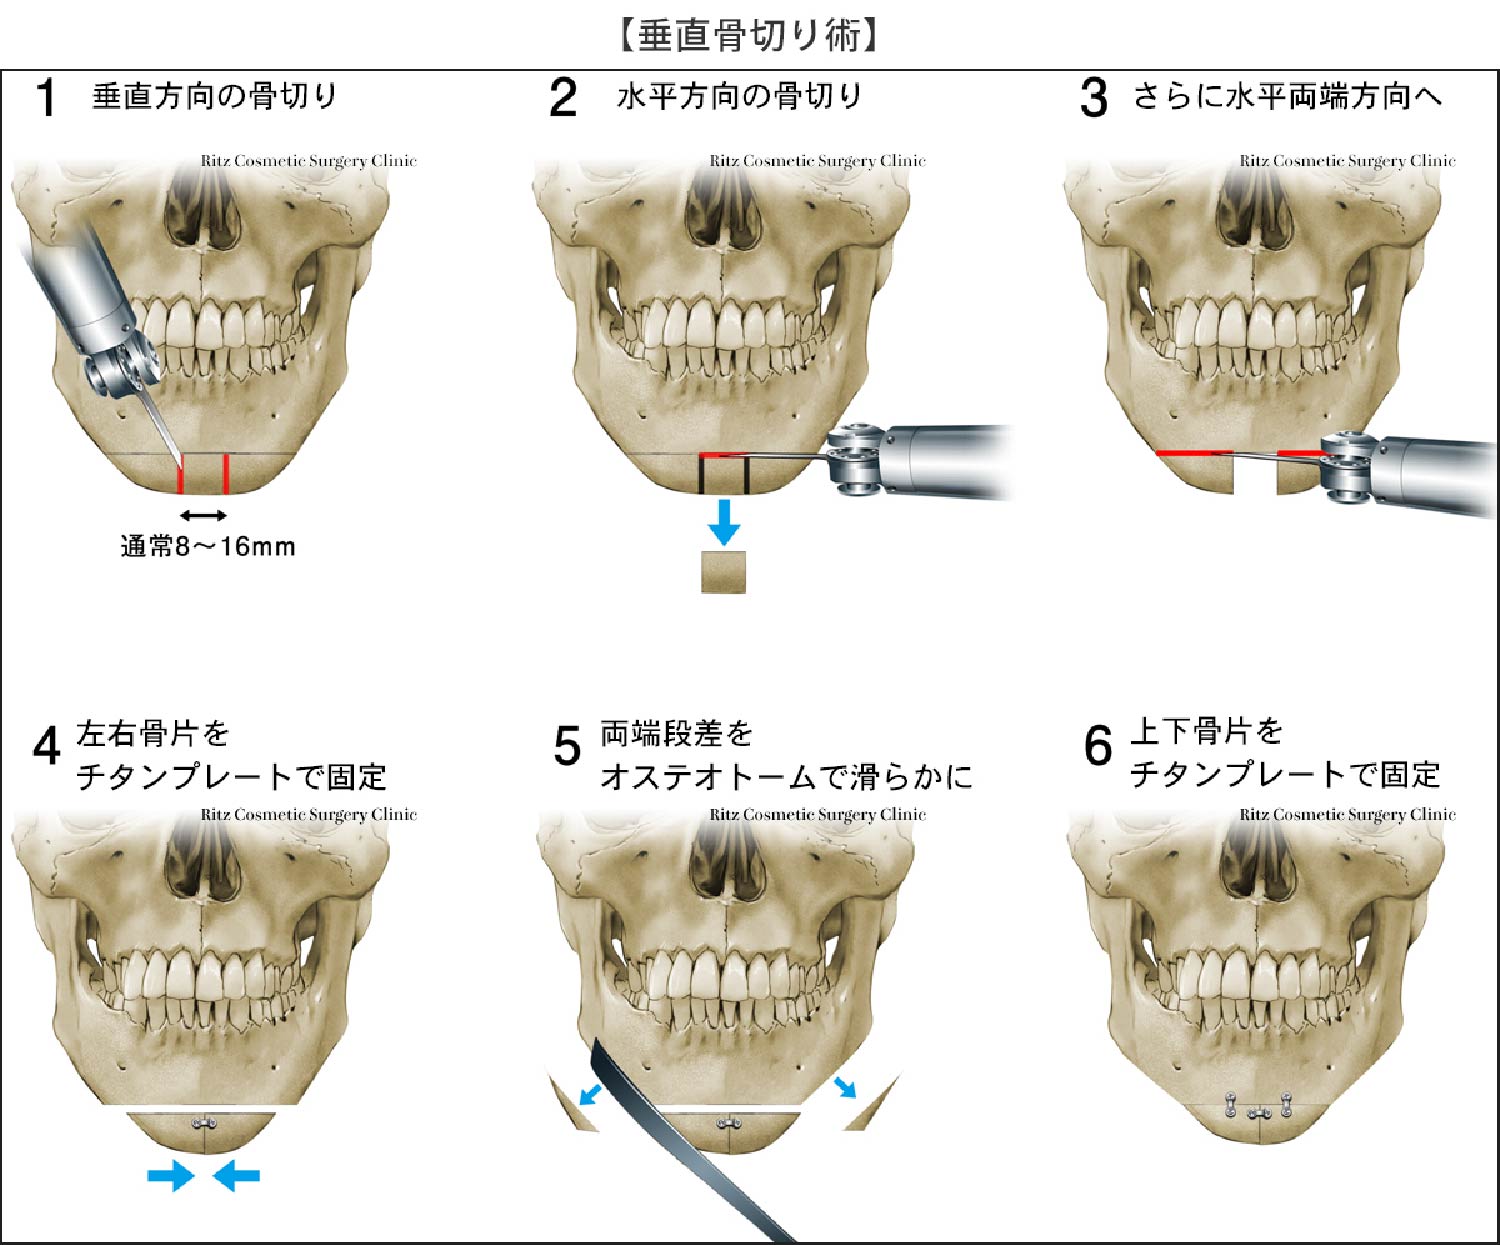 垂直骨切り術の６つの手順